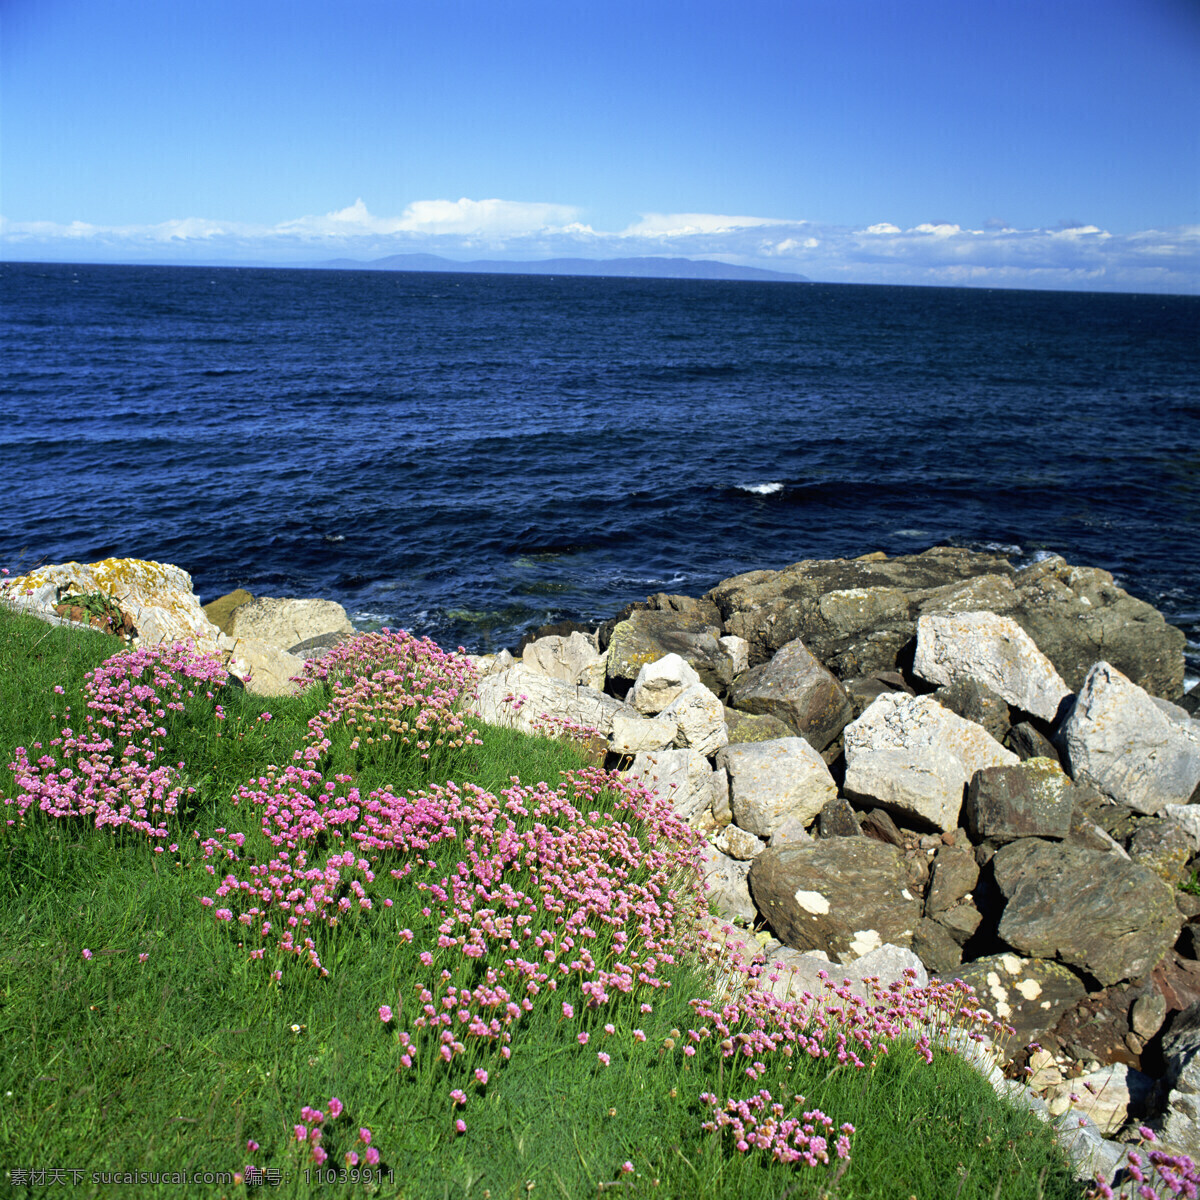 蓝天 大海 自然景观 景色 景光 白云 深蓝色 海岸 石头 岩石 绿草 鲜花 高清图片 大海图片 风景图片